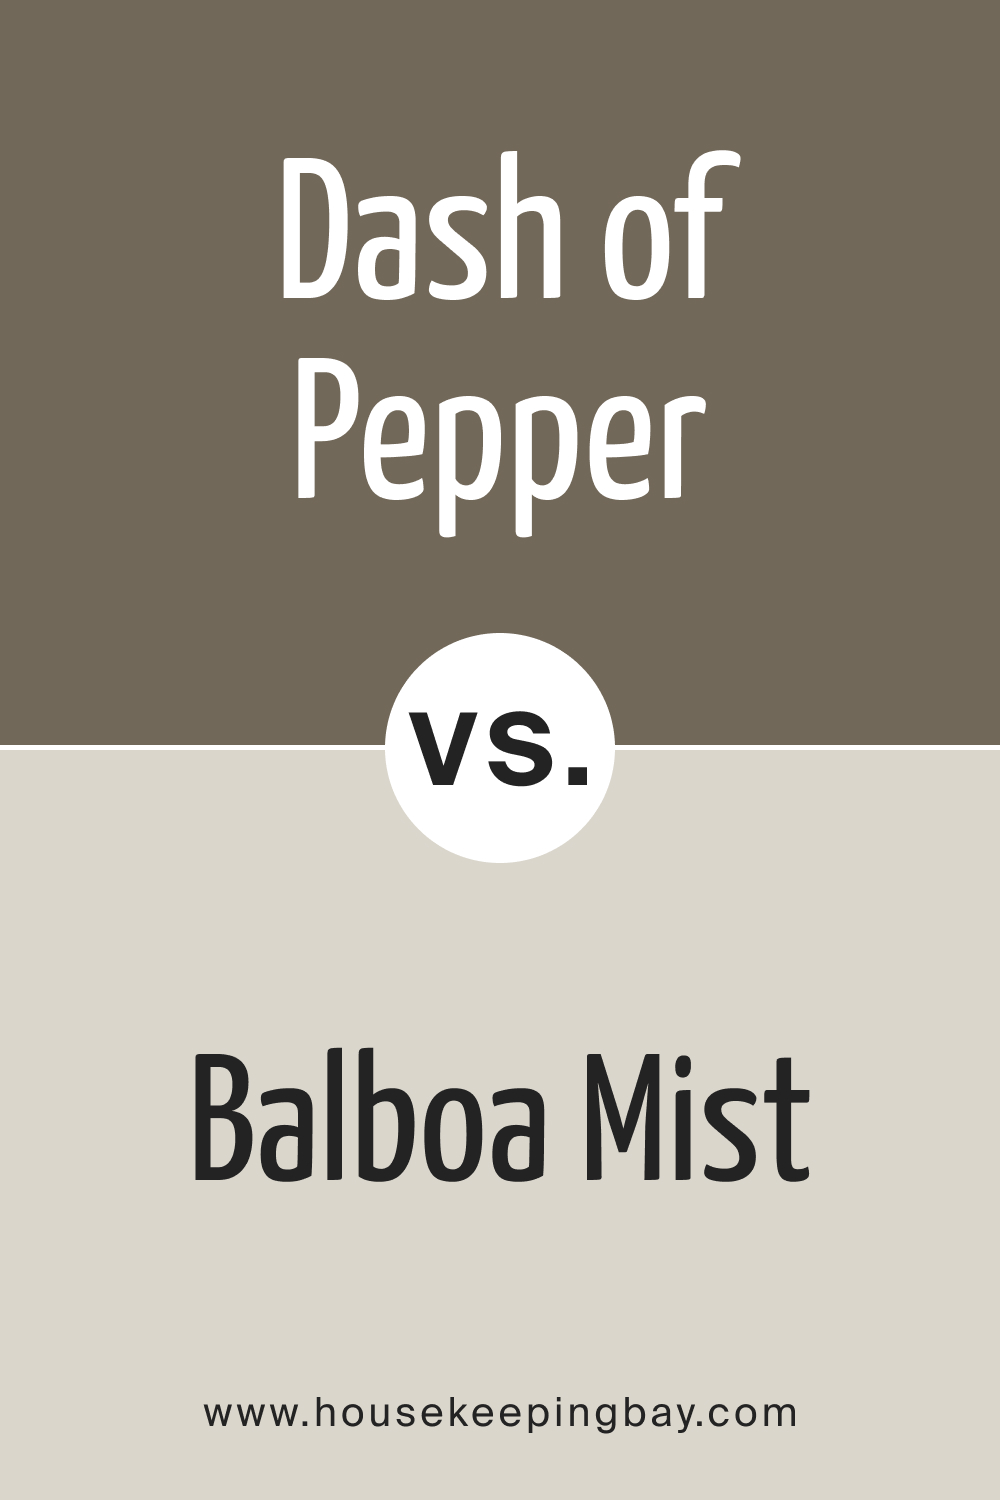 BM Dash of Pepper 1554 vs. BM 1549 Balboa Mist